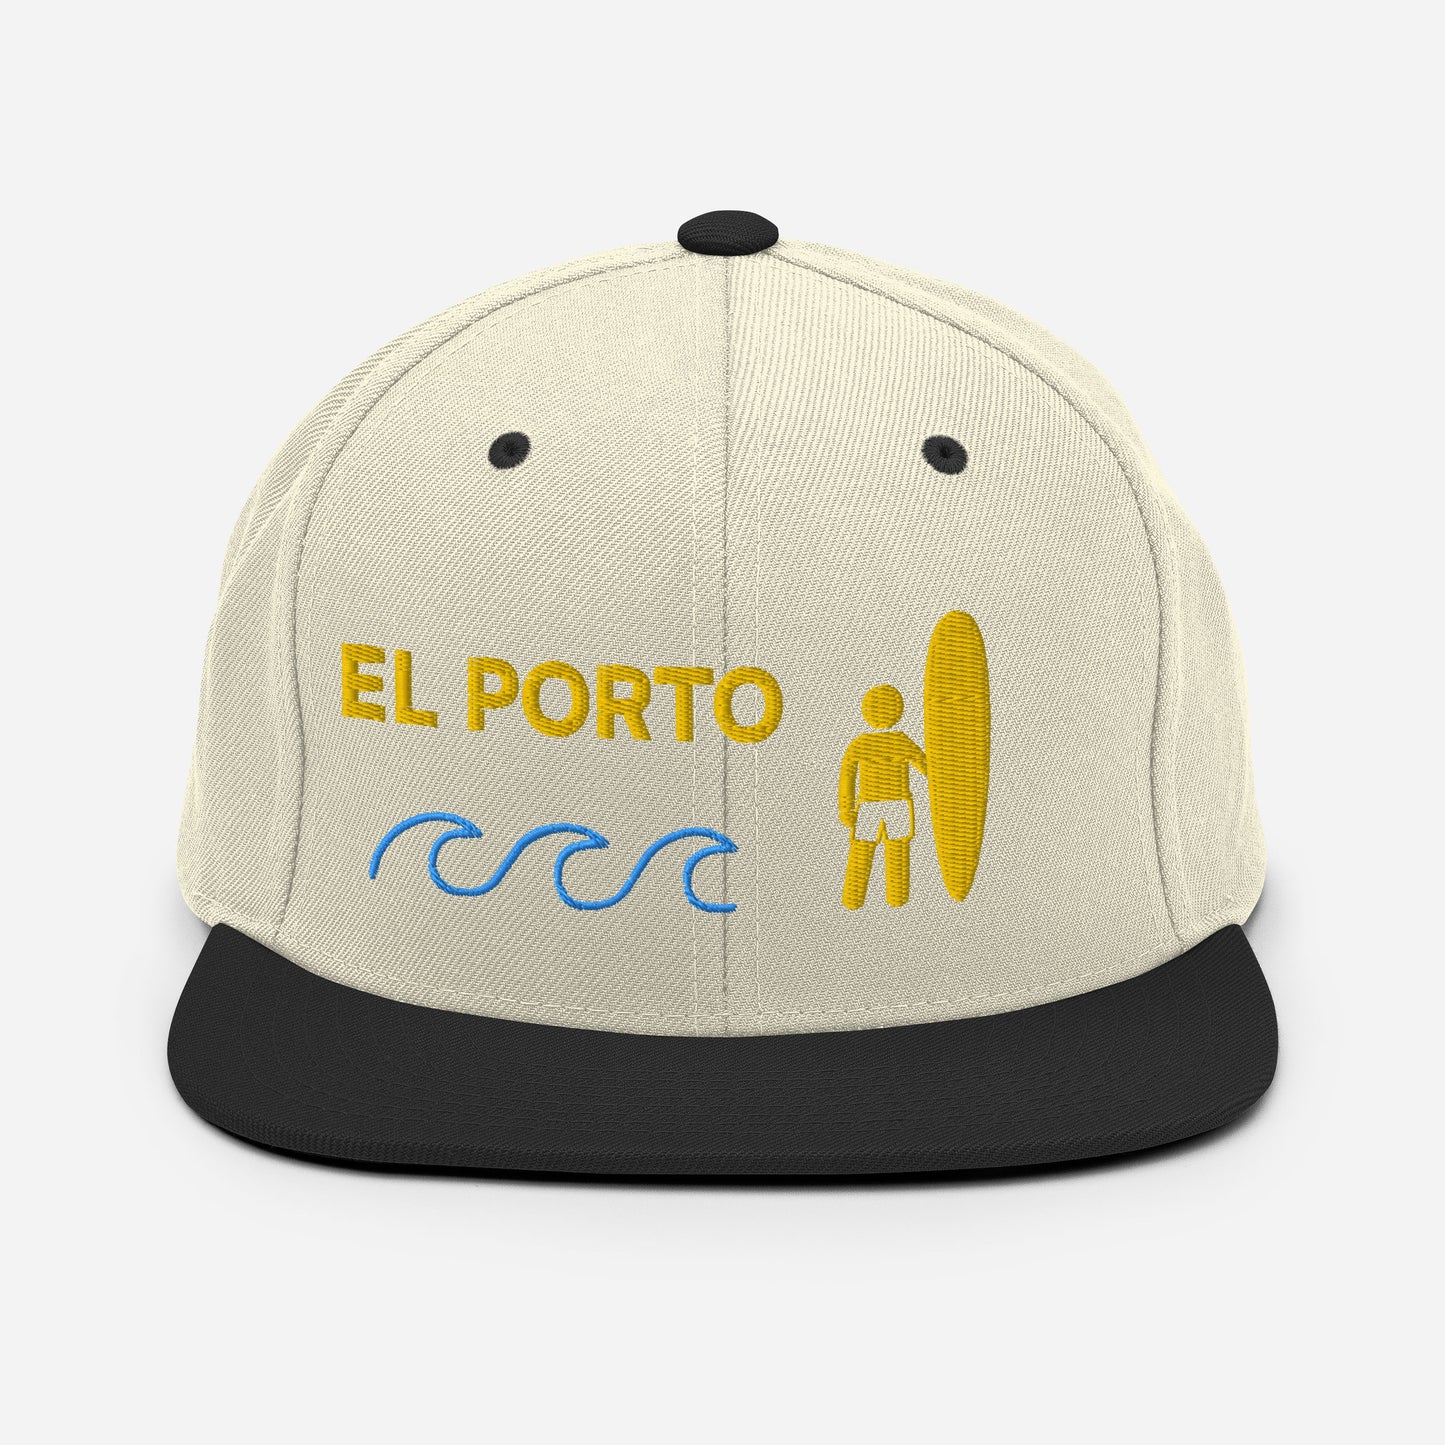 EL PORTO Manhattan Beach California - Locals Only Surfing Hat - Snapback Hat